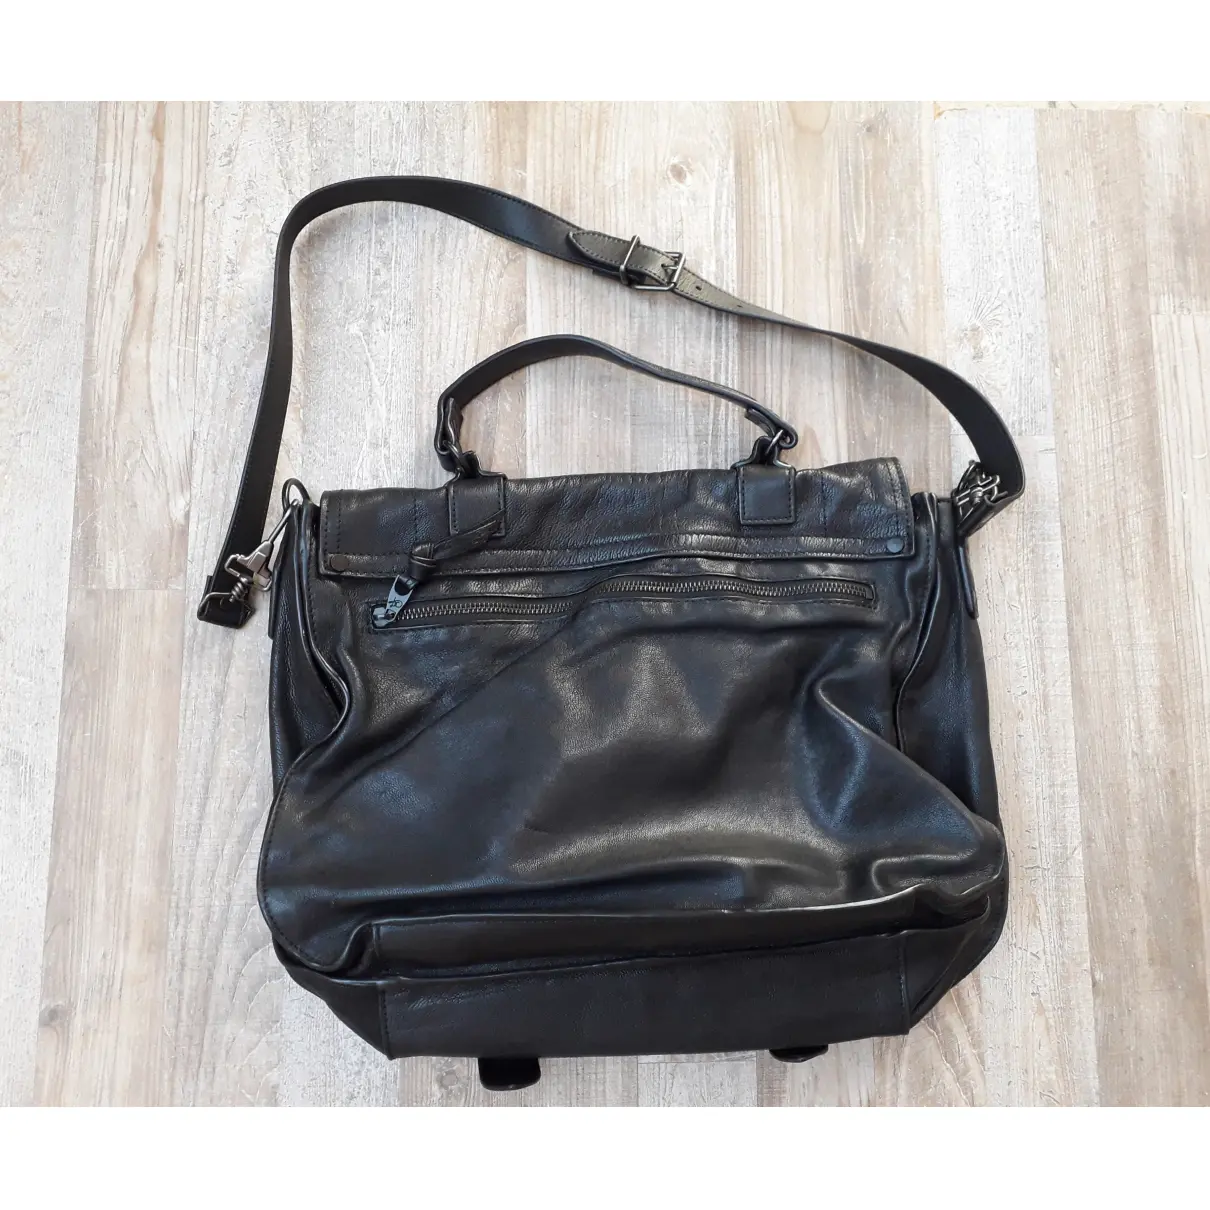 Buy Proenza Schouler PS1 Large leather handbag online